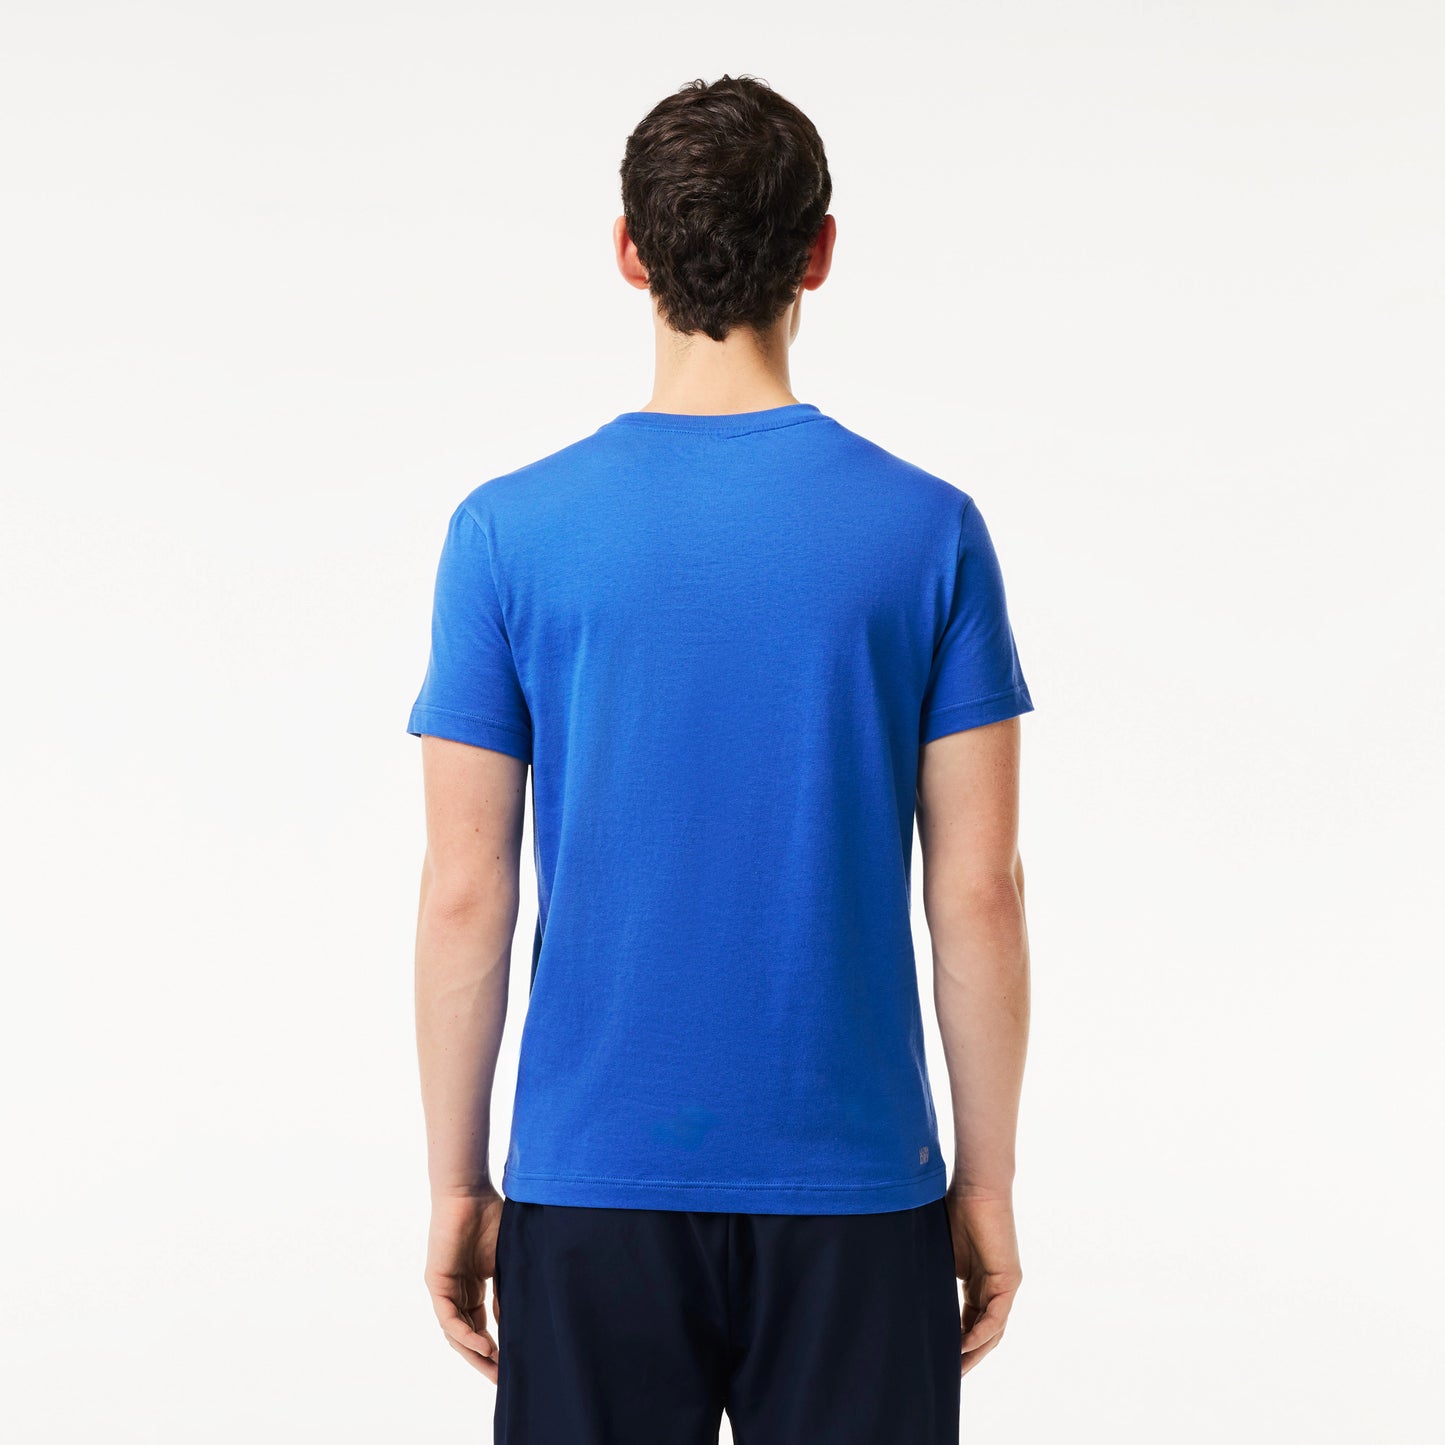 EN'S SPORT 3D PRINT CROC JERSEY T-SHIRT Men - Blue - Lacoste - T-Shirts